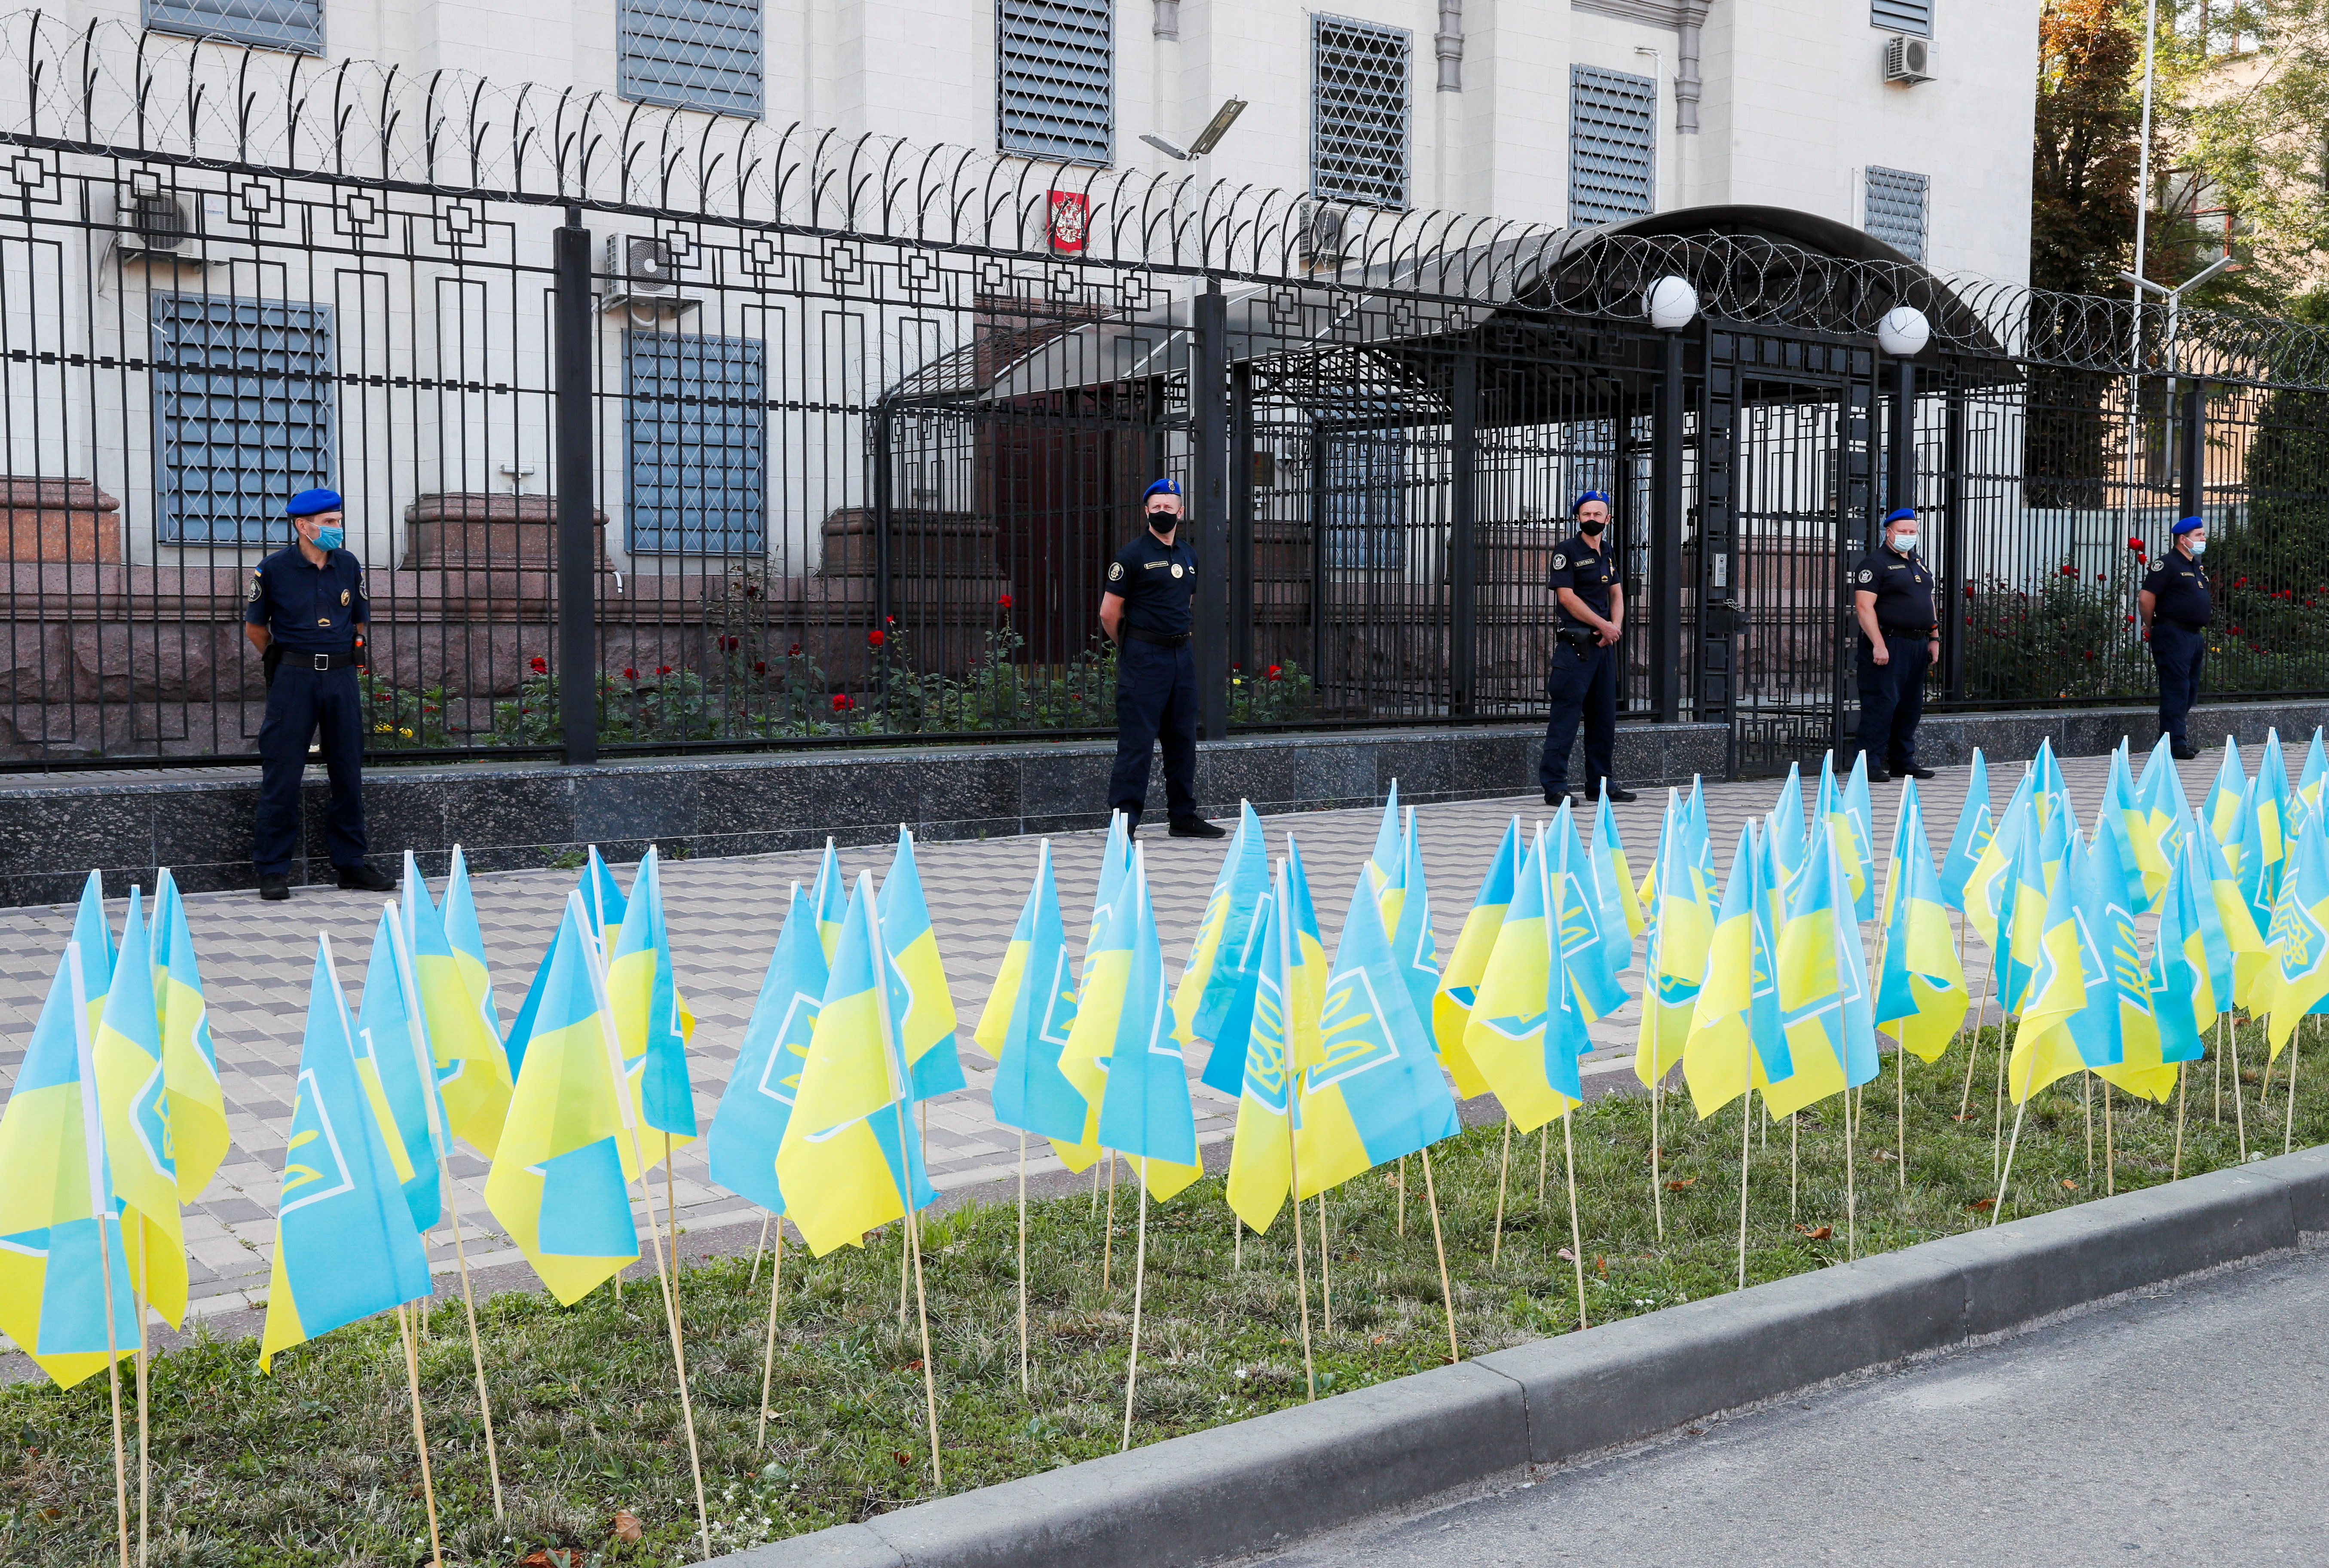 Las banderas ucranianas que simbolizan a 14.000 personas muertas en un conflicto entre las tropas ucranianas y las fuerzas separatistas respaldadas por Rusia en la región oriental de Donbas desde 2014 rodean la embajada rusa durante una manifestación en Kiev (REUTERS/Gleb Garanich)